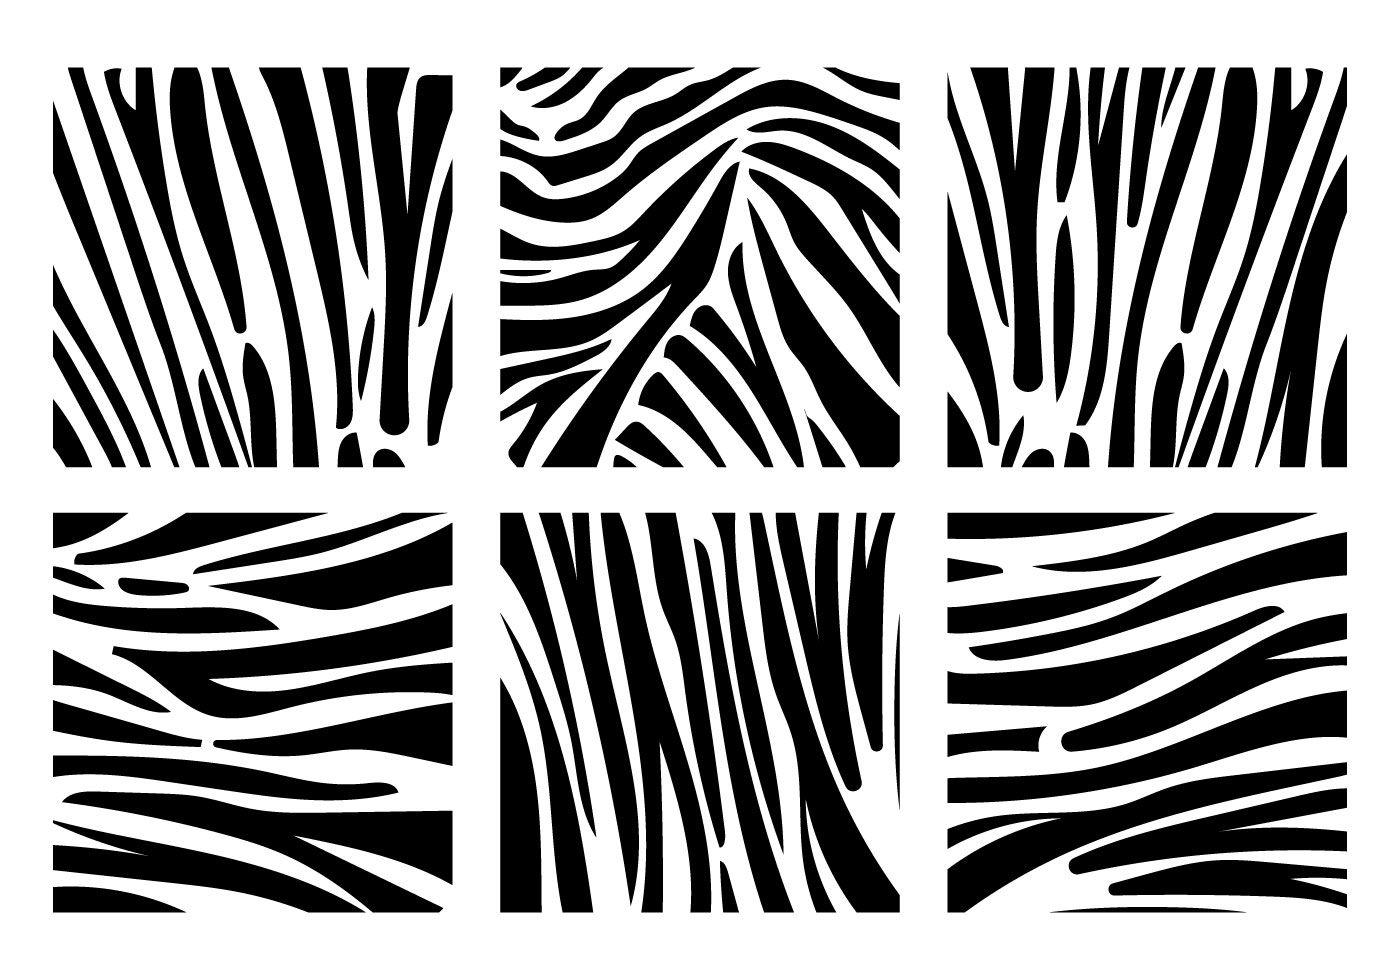 Zebra print background vectors Free Vector Art, Stock